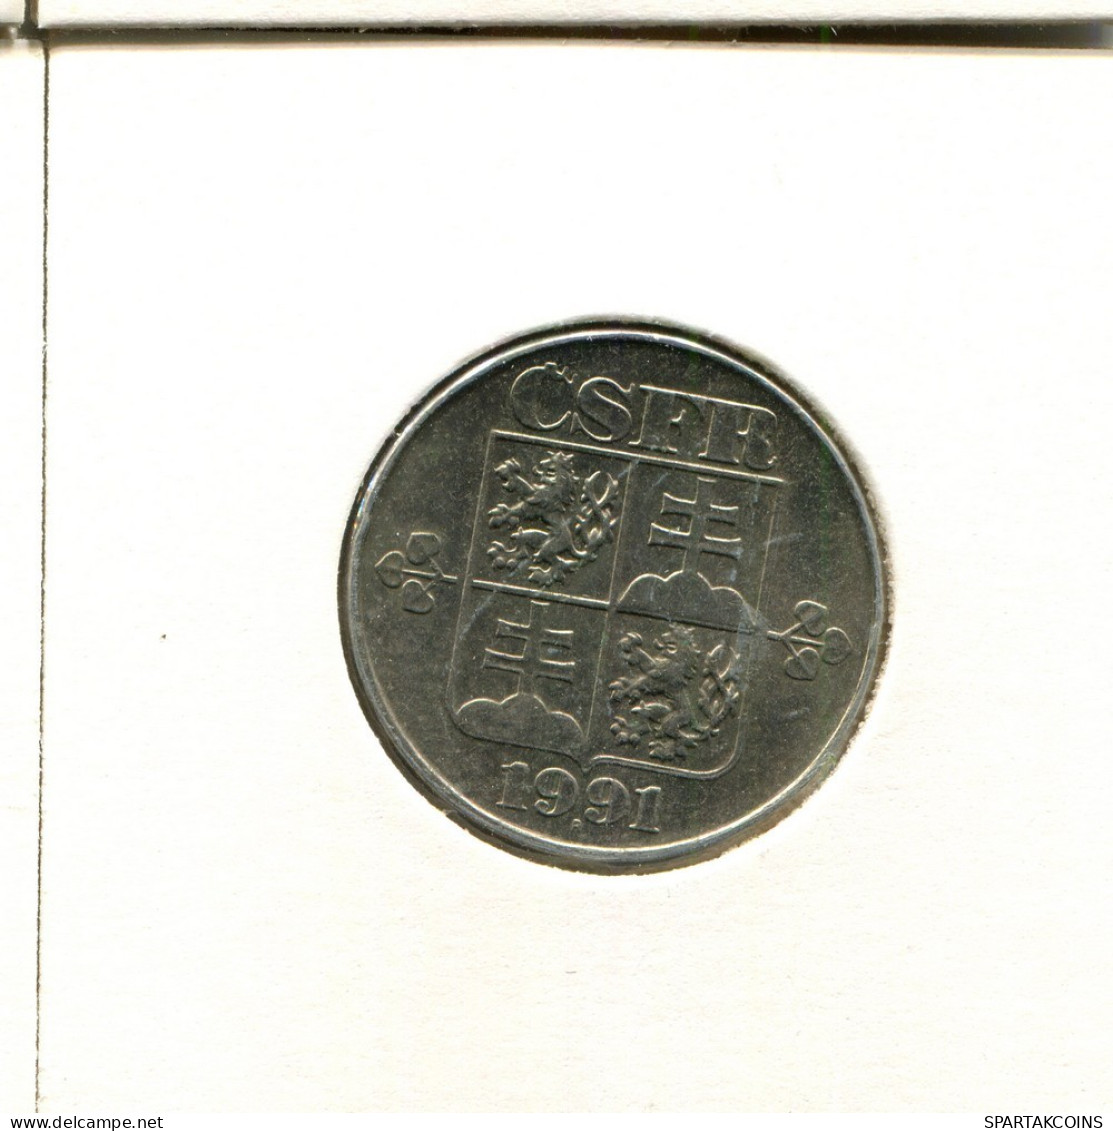 2 KORUN 1991 TSCHECHOSLOWAKEI CZECHOSLOWAKEI SLOVAKIA Münze #AZ959.D.A - Tschechoslowakei